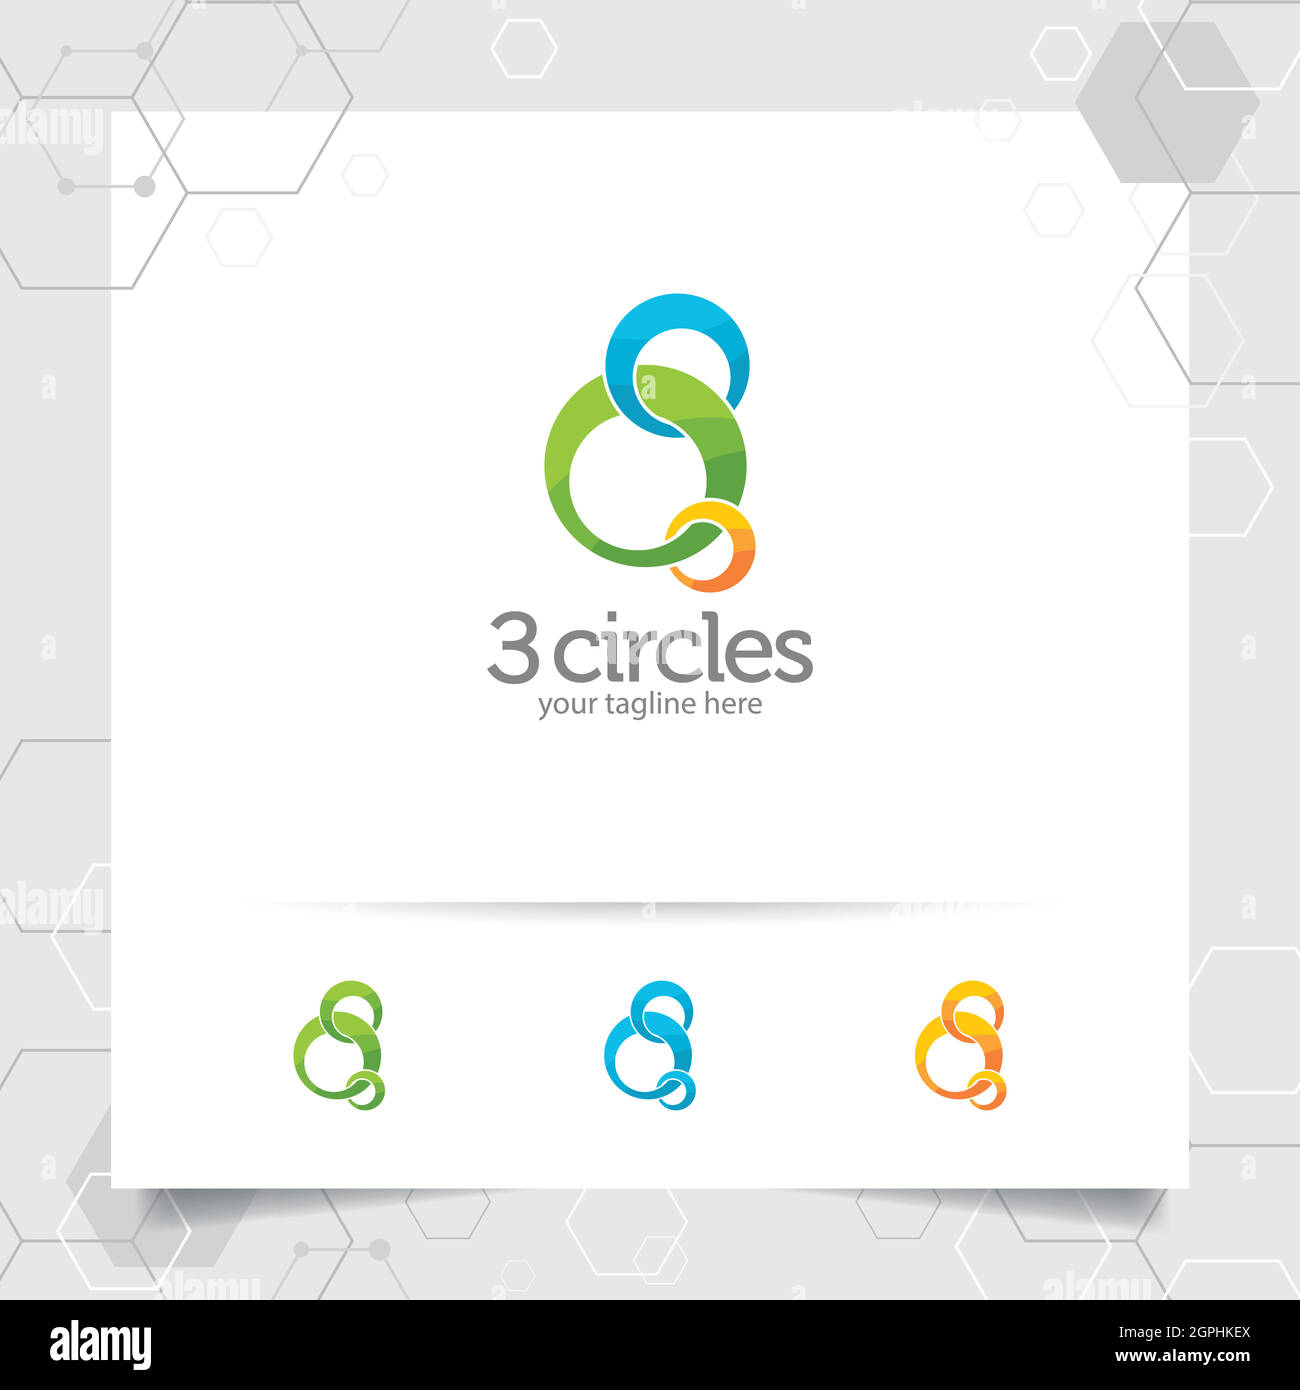 Illustrazione del design del logo Circle con tre vettori circolari per aziende, applicazioni e tecnologia. Illustrazione Vettoriale